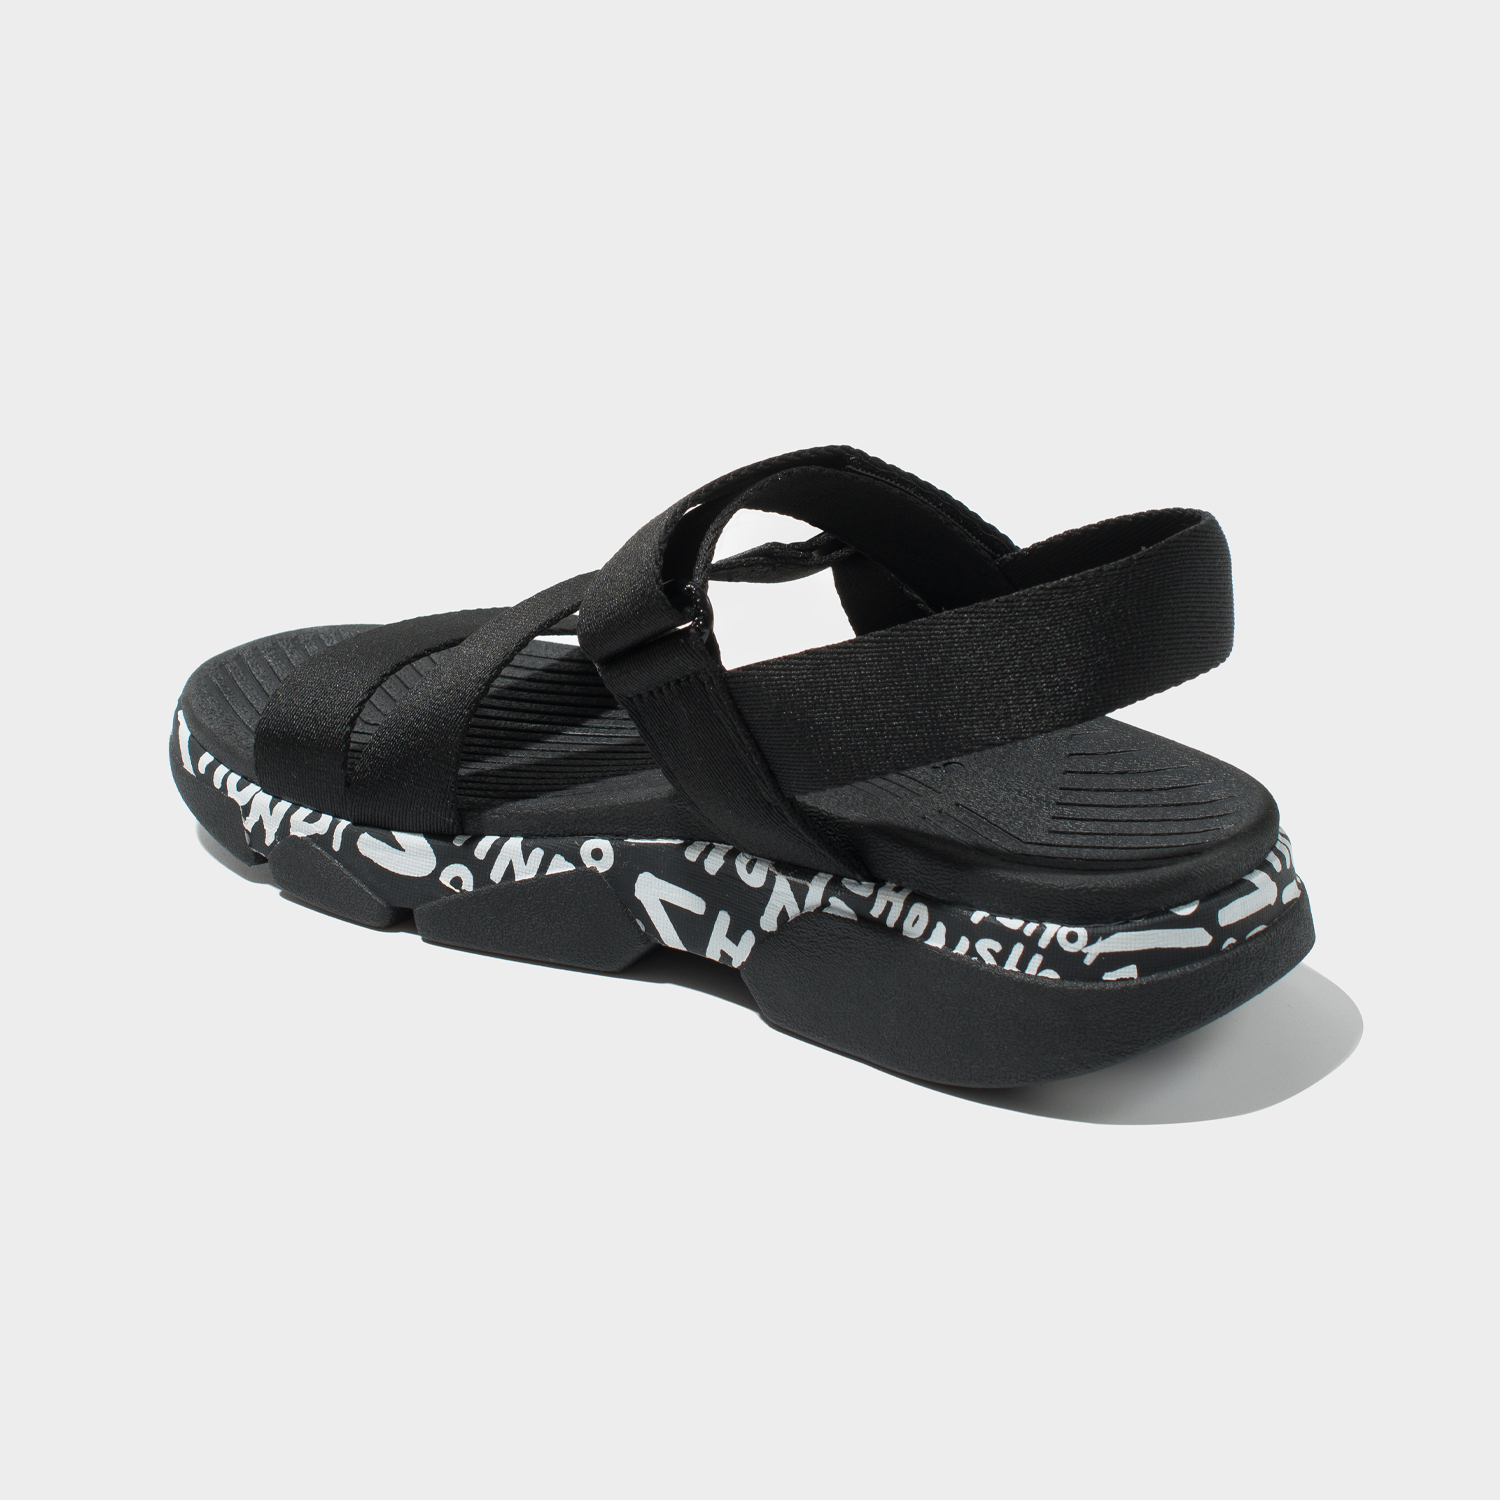 Giày Sandal SHONDO F7T1019: Giày Sandal SHONDO F7T1019 mang đến cho bạn cảm giác tiện lợi, thoải mái và phong cách trong mùa hè này. Với thiết kế đẹp mắt, chất liệu nhẹ nhàng và đường kim mũi chỉ tỉ mỉ, giày sandal này đã chinh phục hearts ngay từ cái nhìn đầu tiên. Sẵn sàng khám phá thế giới mùa hè với giày sandal thời thượng này!